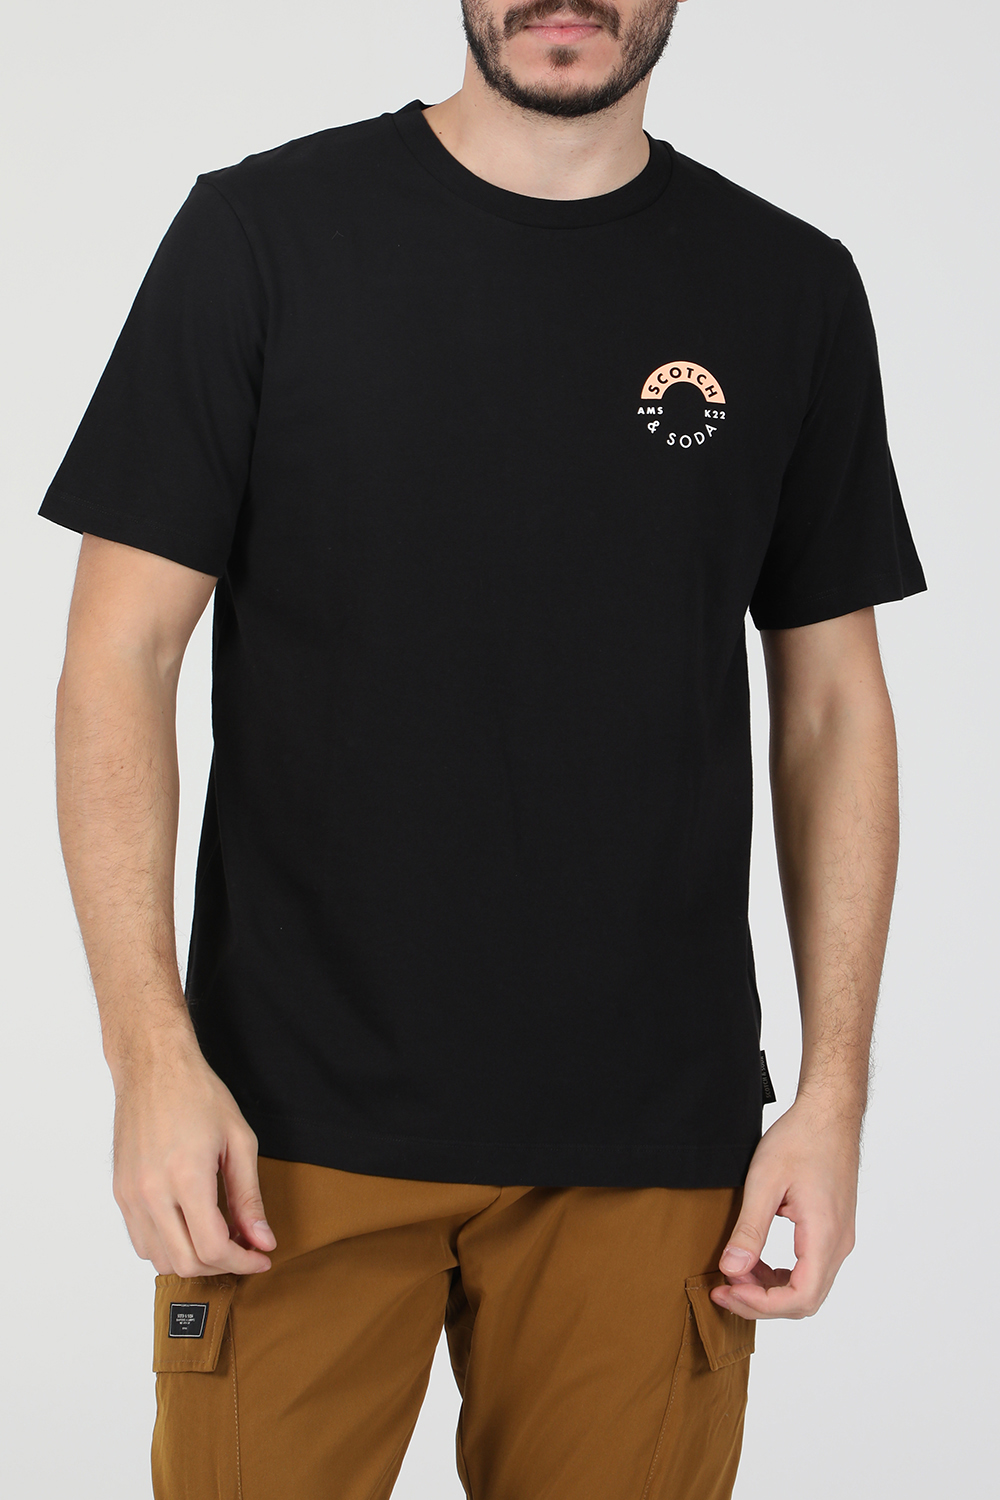 SCOTCH & SODA – Ανδρική κοντομάνικη μπλούζα SCOTCH & SODA μαύρη 1821053.0-7171